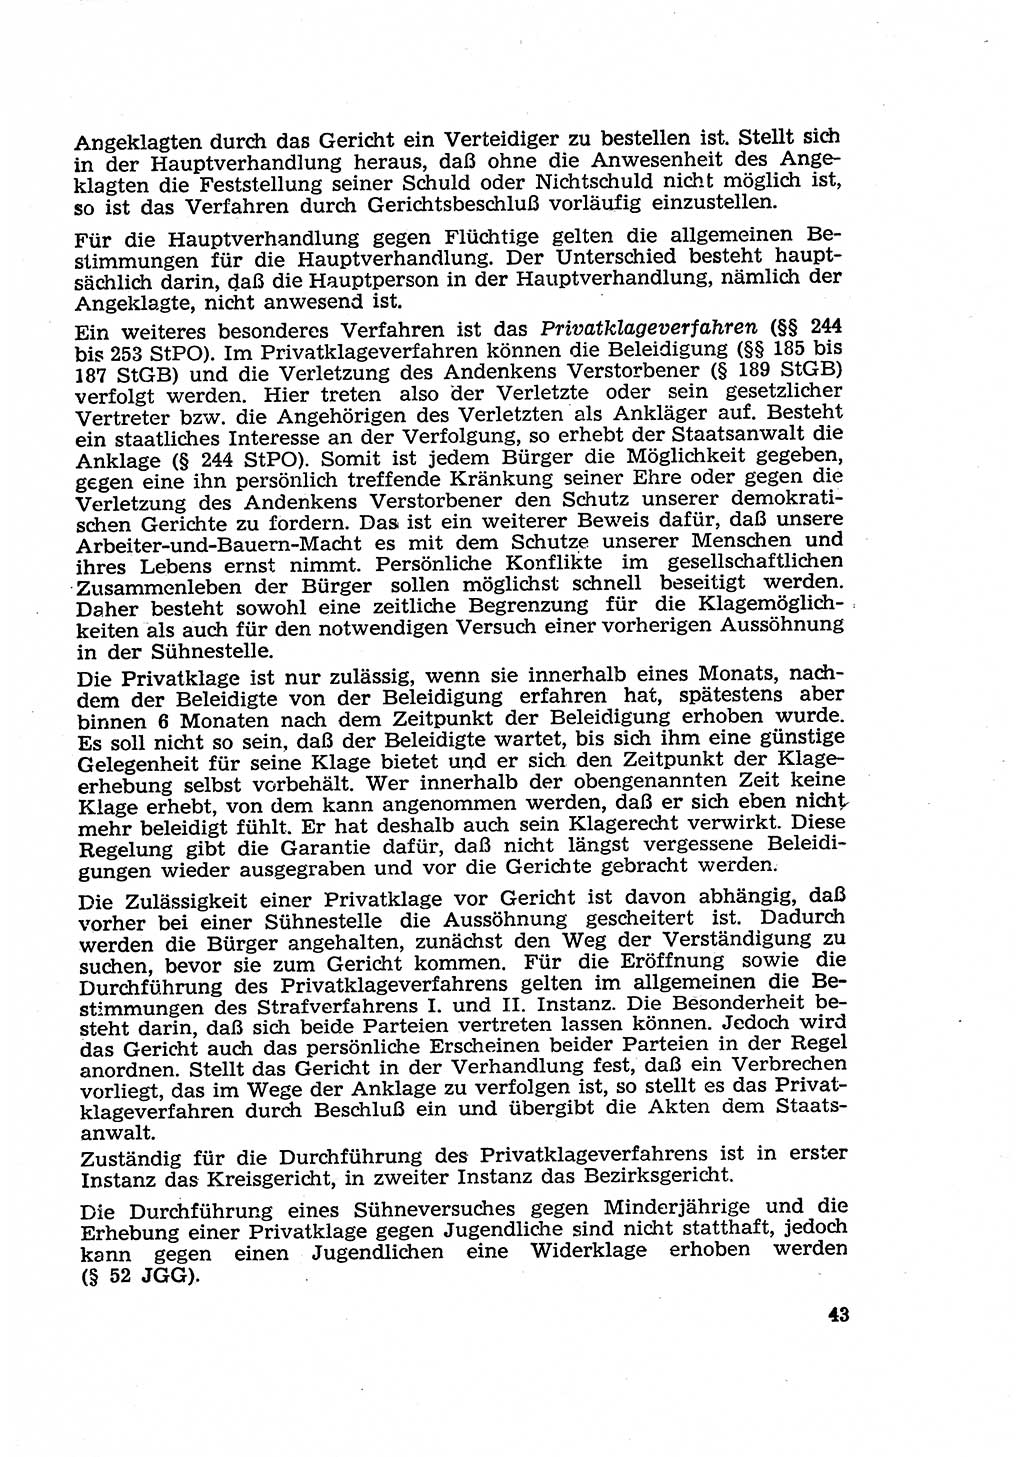 Strafverfahren in der Deutschen Demokratischen Republik (DDR) und seine demokratischen Prinzipien 1956, Seite 43 (Str.-Verf. DDR 1956, S. 43)